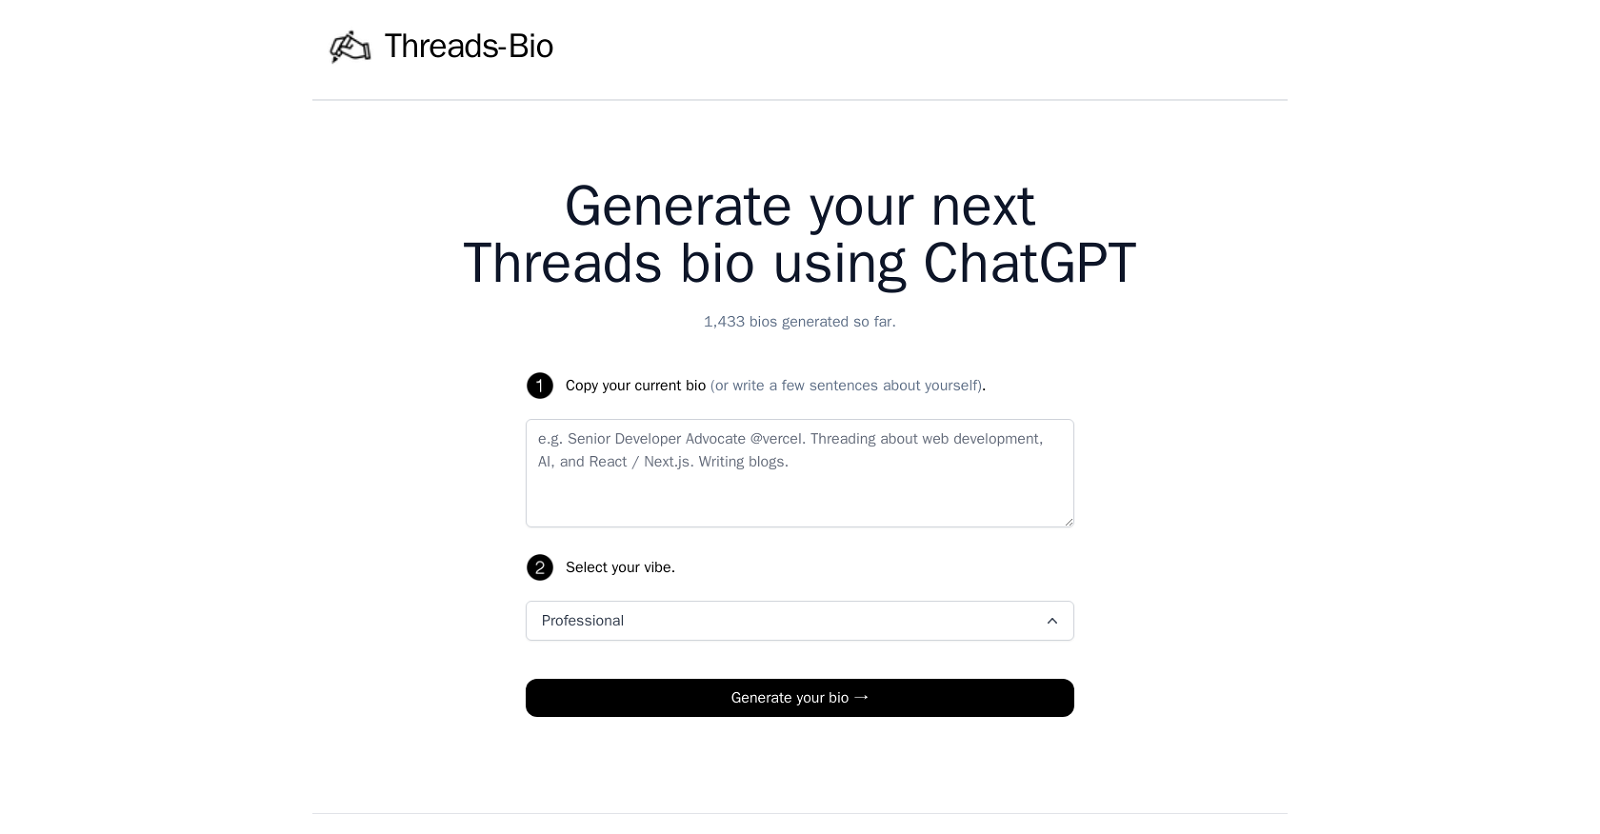 Threads Bio